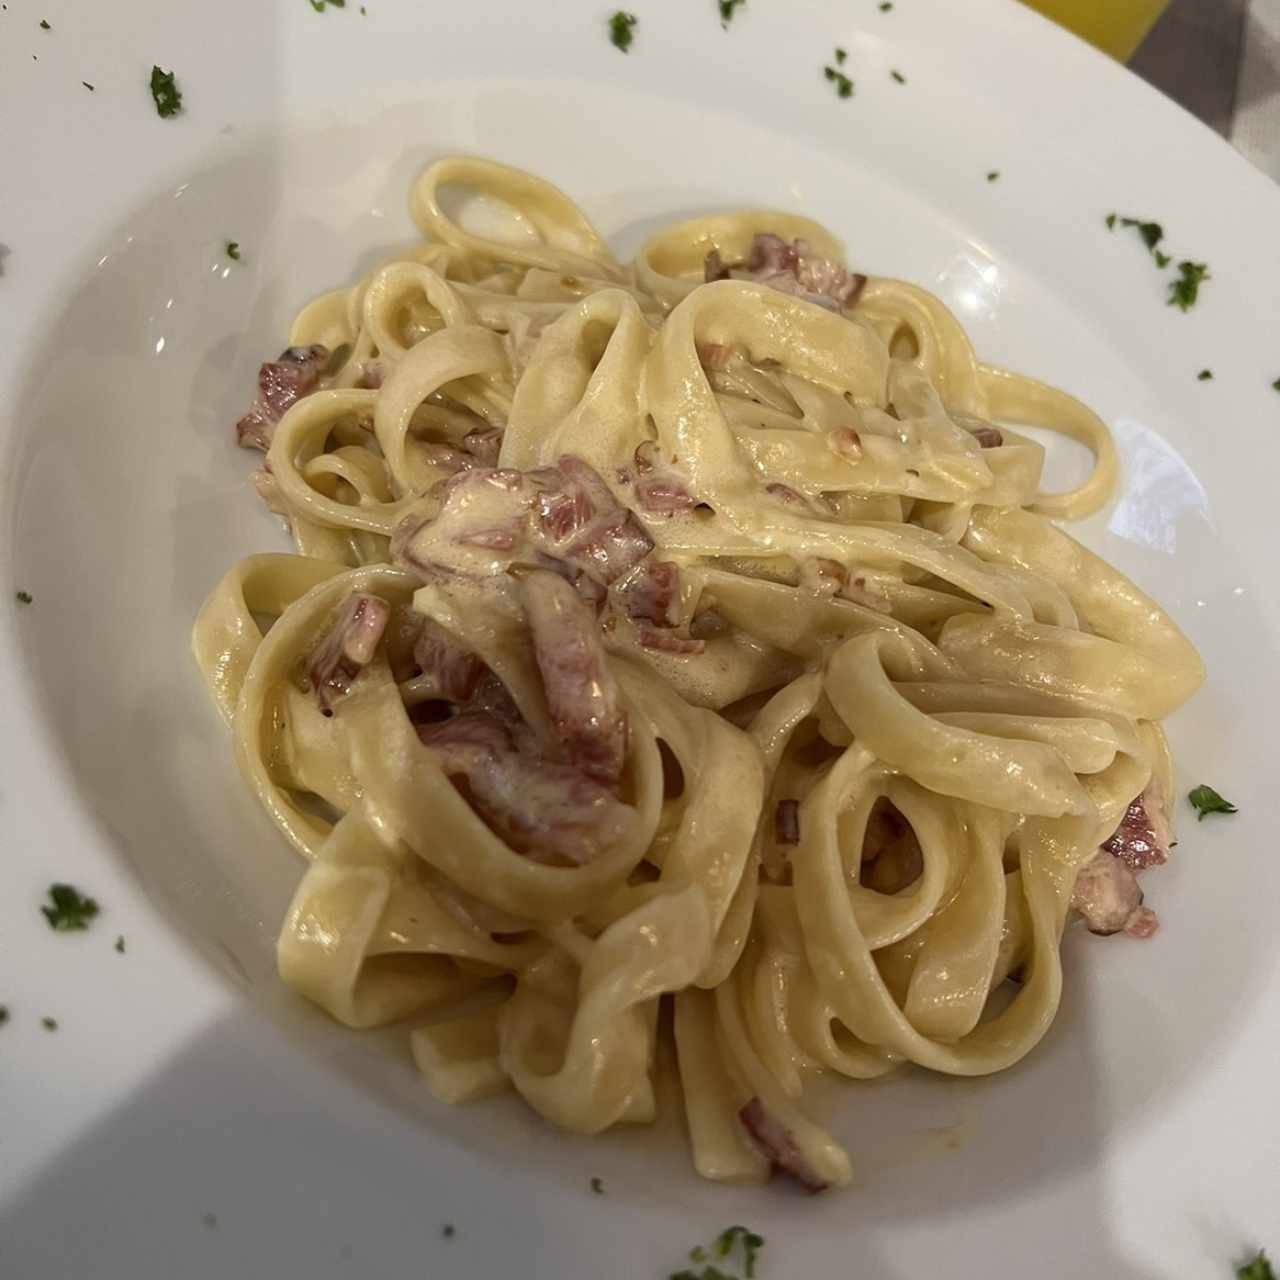 Pasta - Carbonara